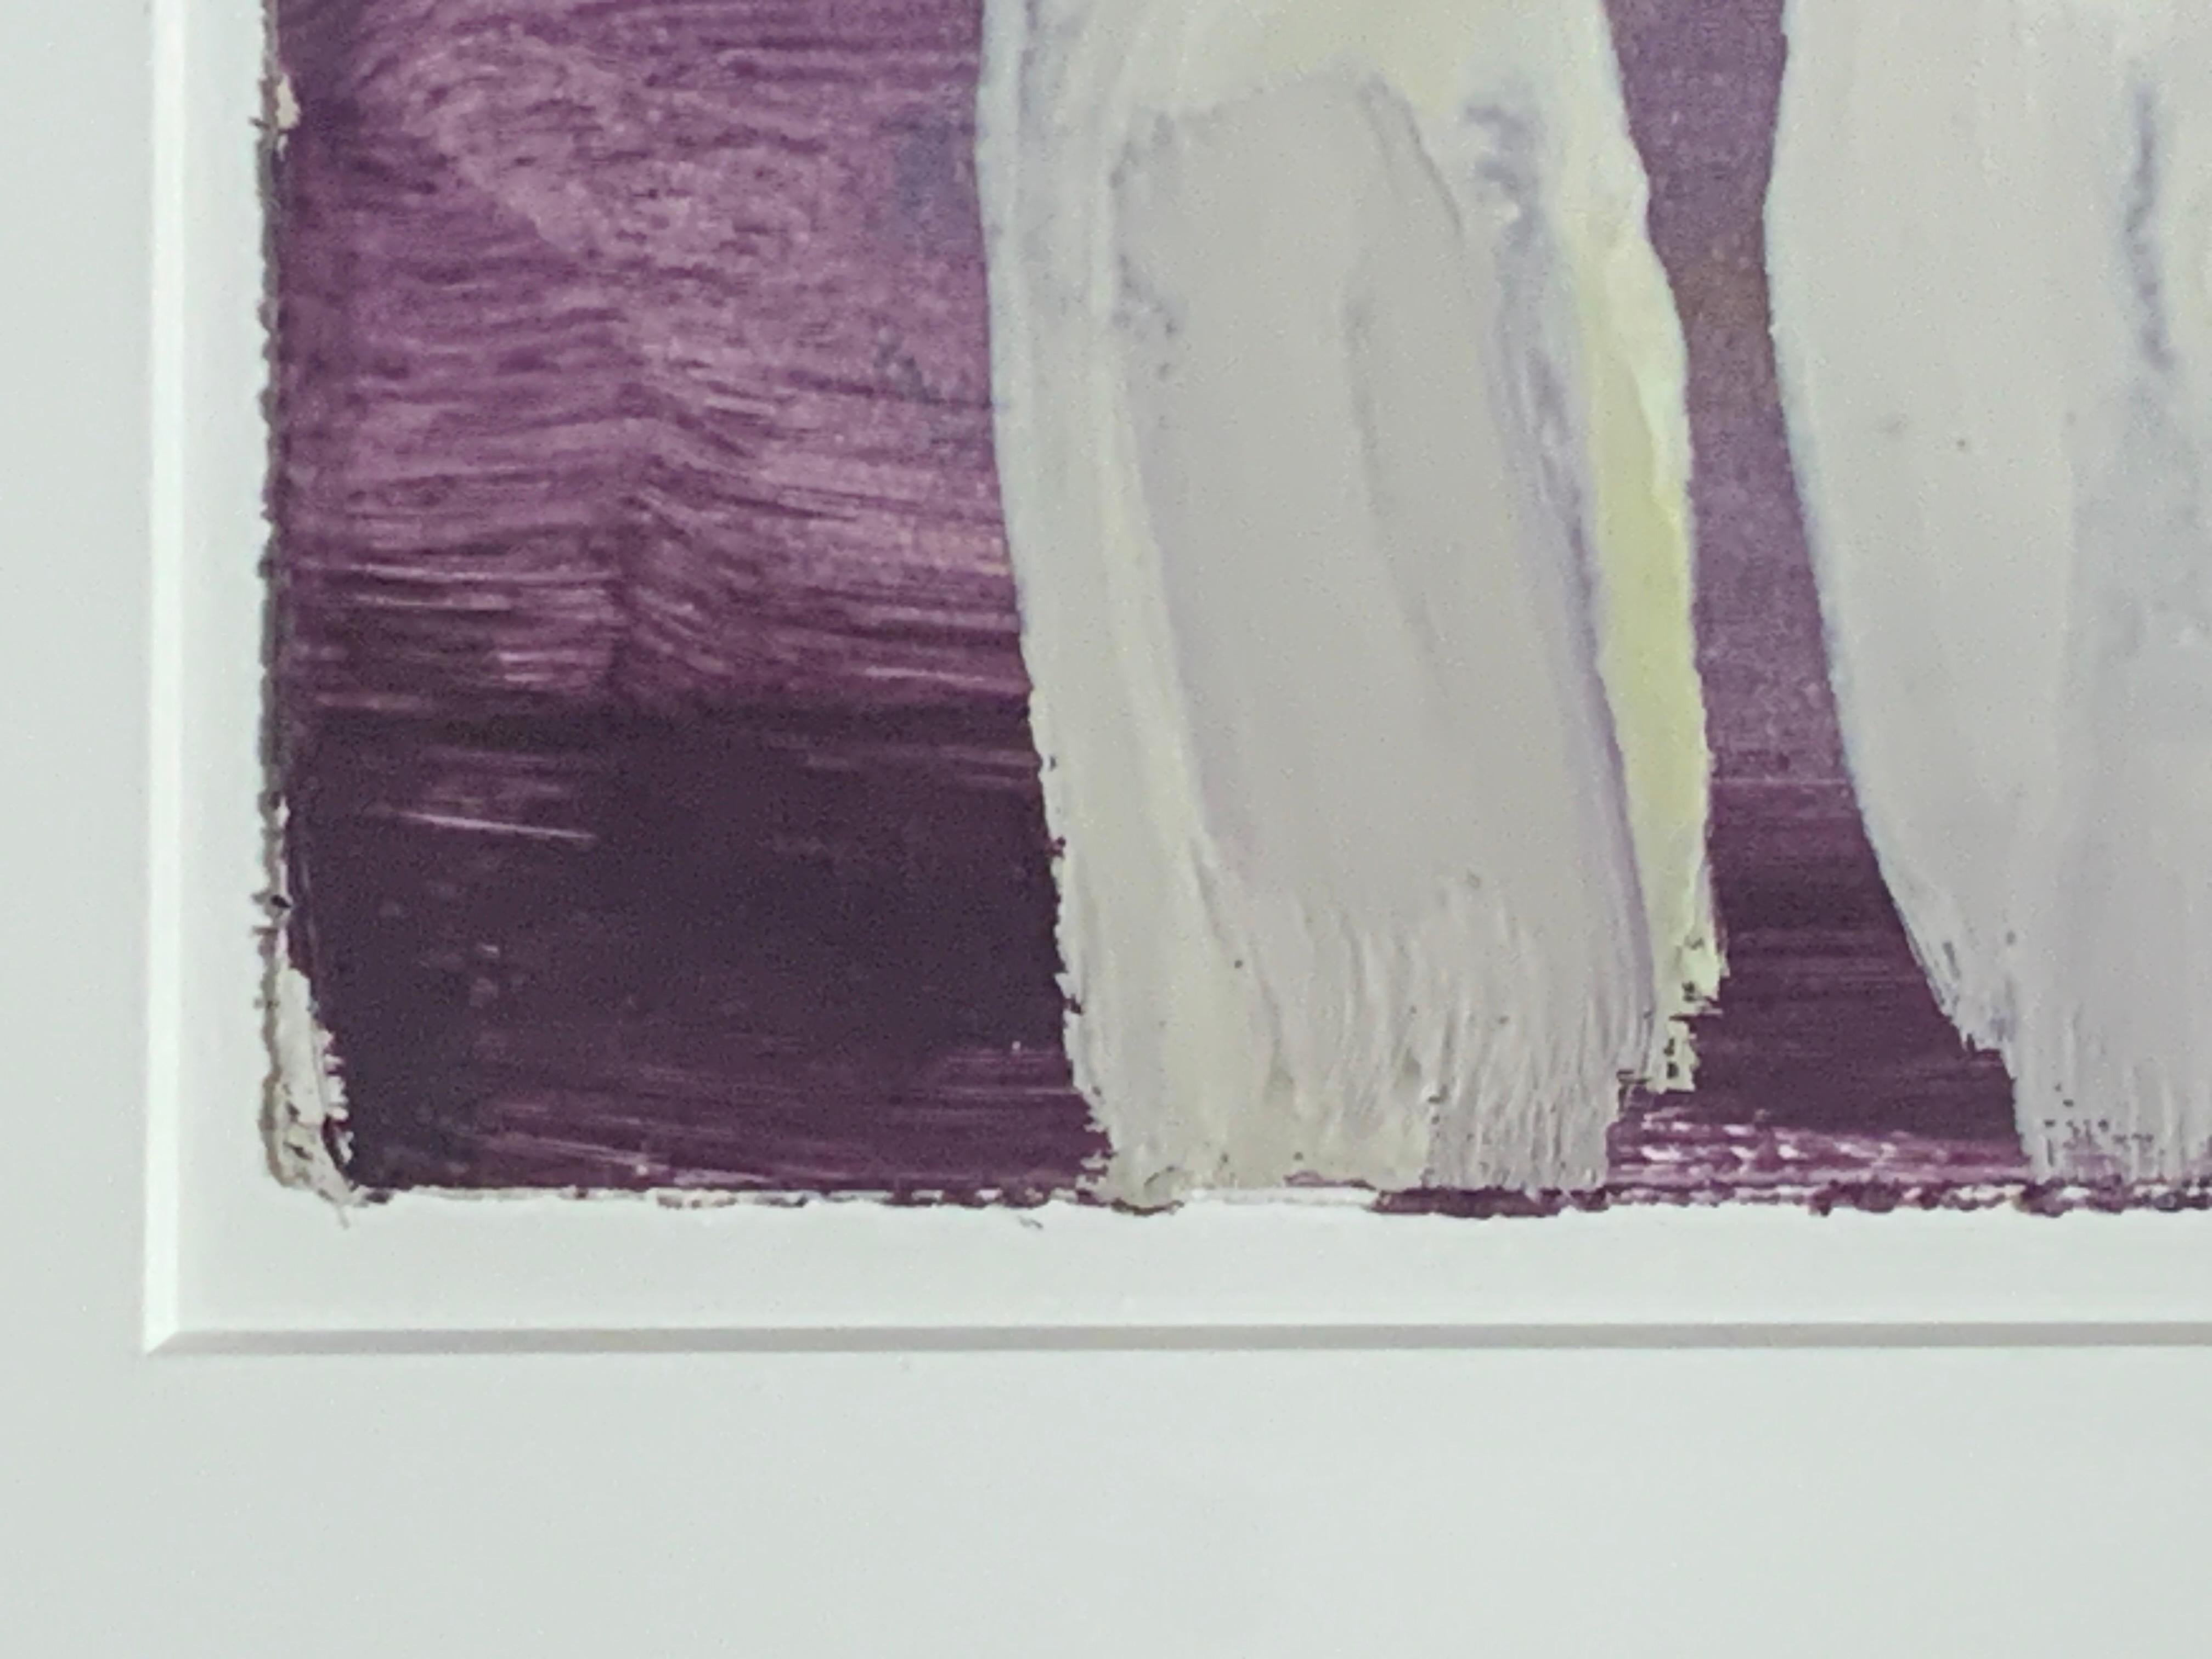 Gary Komarin (geb. 1951) gehört zur Generation der post-painterly abstrakten Künstler, neben namhaften Künstlern wie Frank Stella, Kenneth Noland, Helen Frankenthaler und Ellsworth Kelly, um nur einige Vertreter dieser Schule zu nennen.

Die